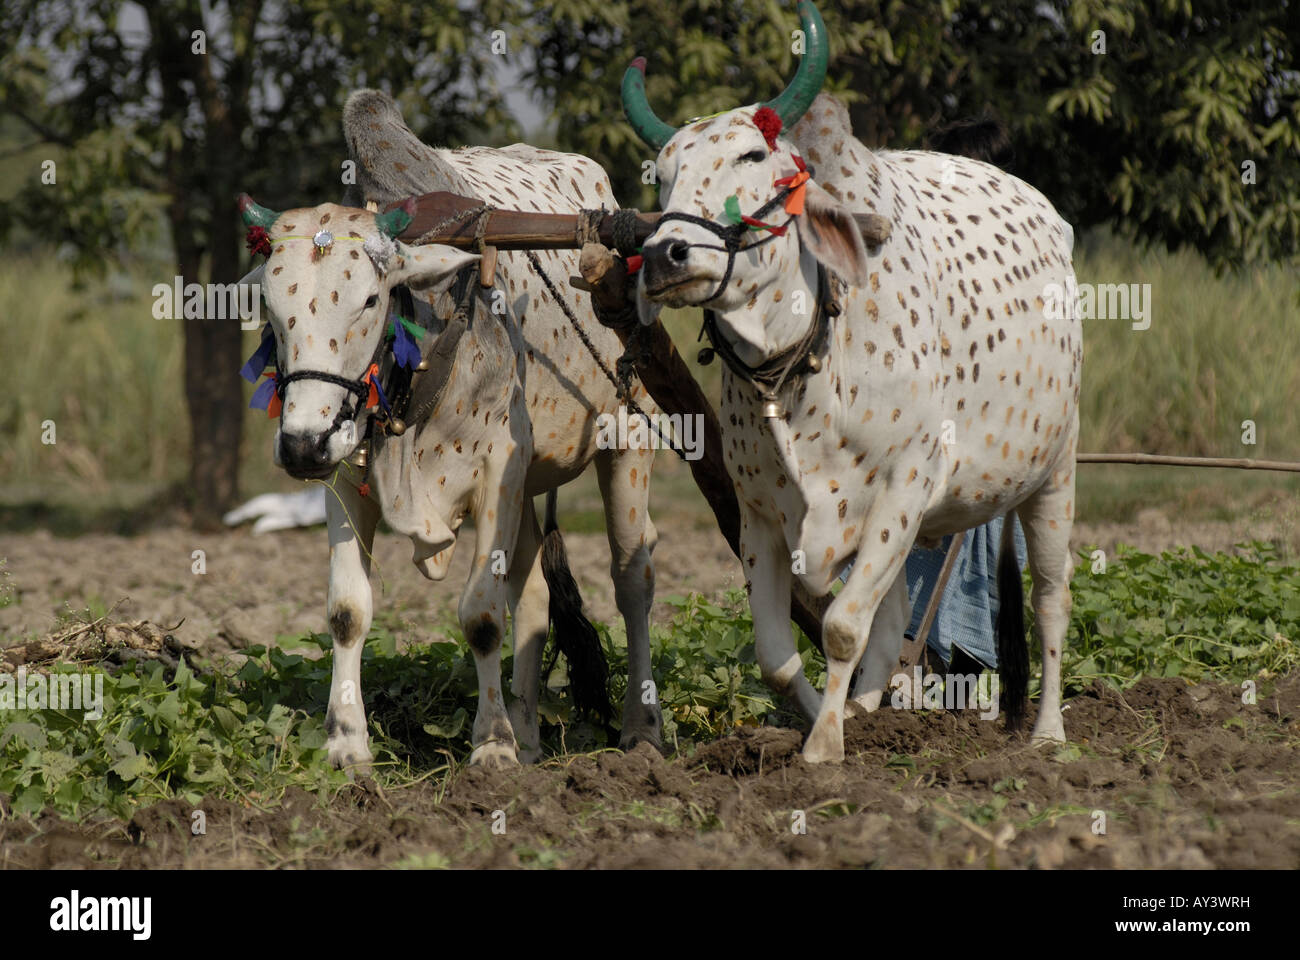 Deux taureaux peints tirant la charrue dans un champ près de Bundi, Rajasthan Inde. Banque D'Images